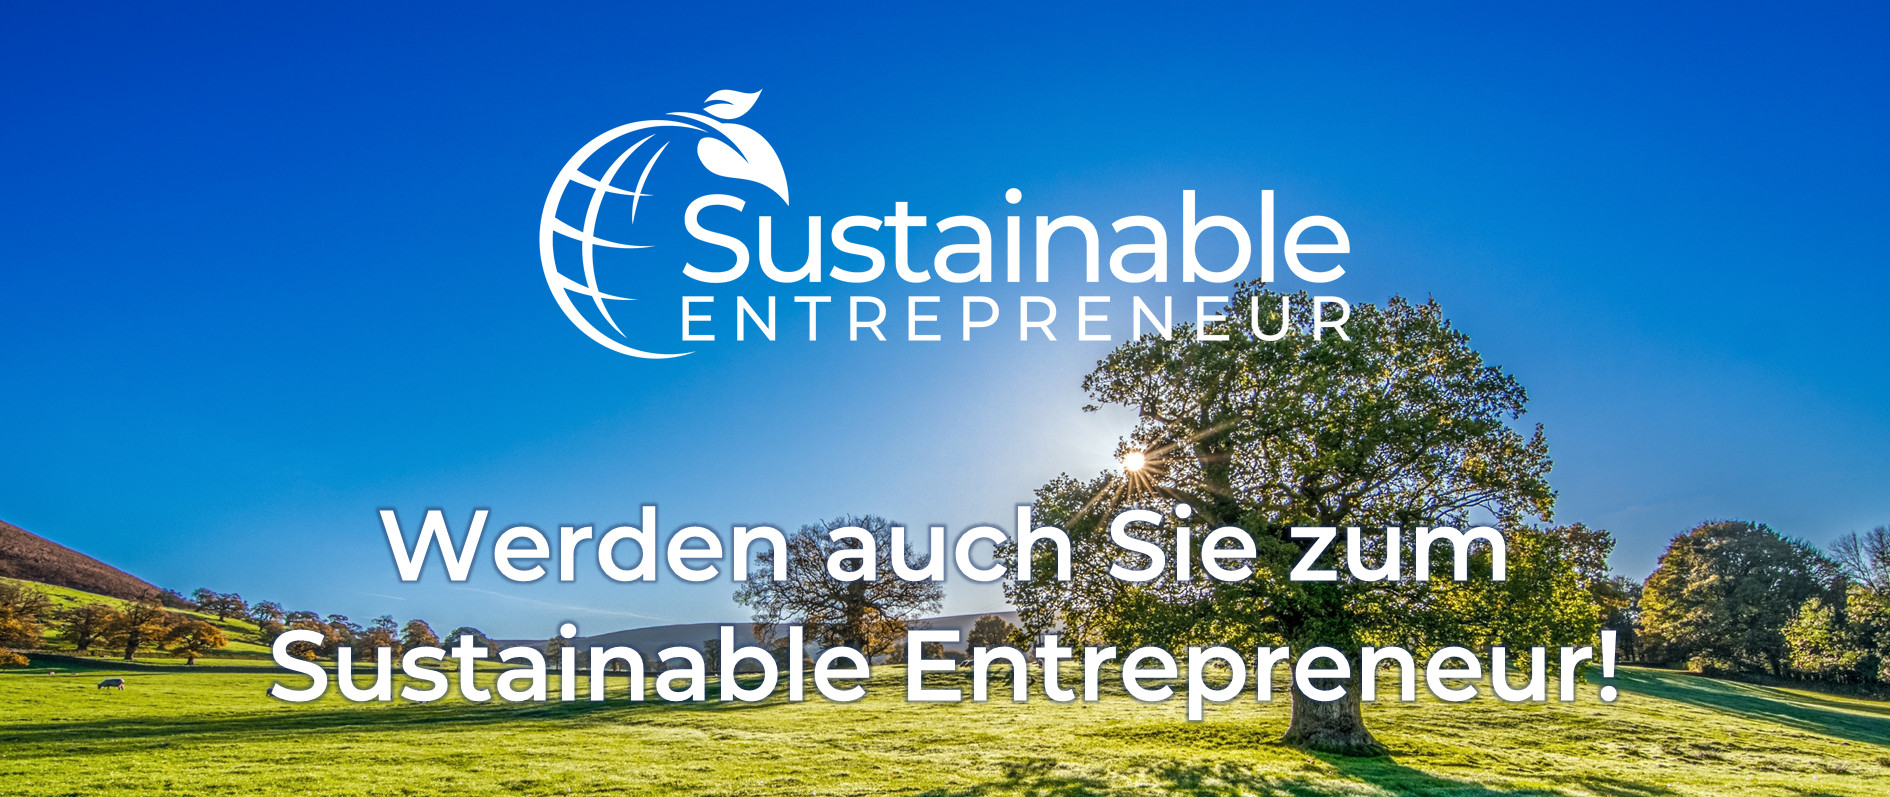 Sustainable_Entrepreneur_Werden_auch_Sie_zum_SE